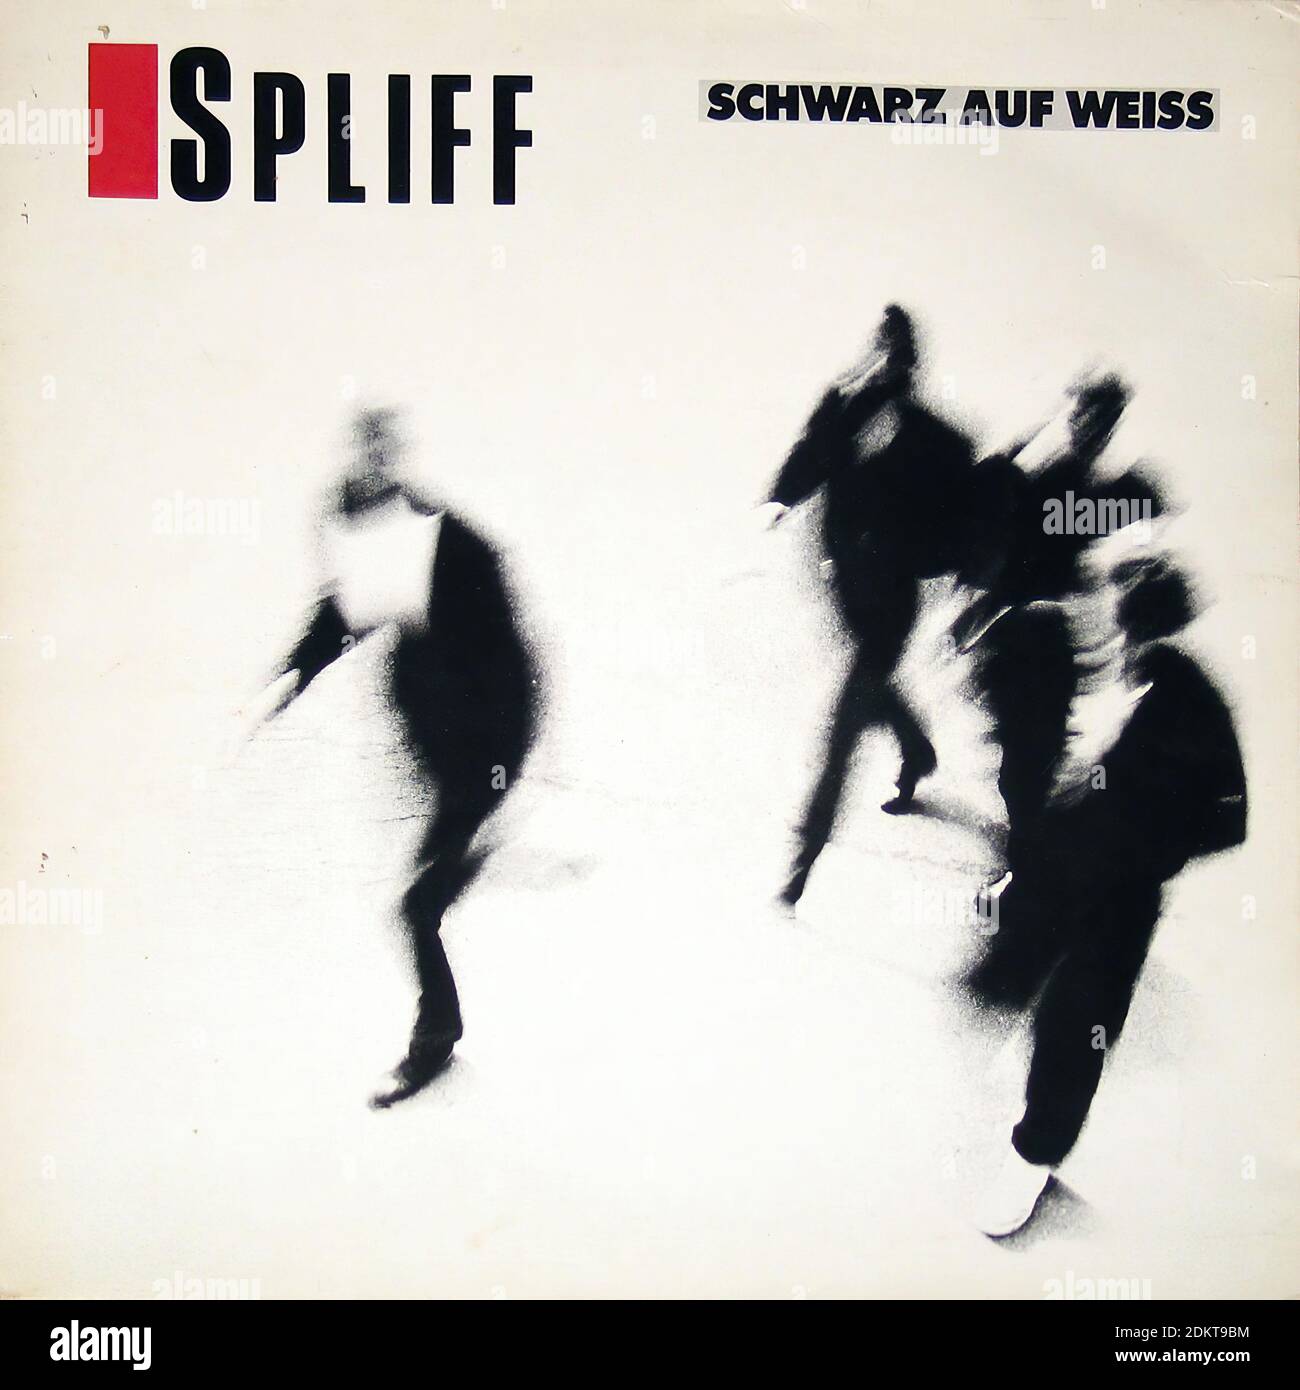 Spliff Schwarz auf Weiss ex Nina Hagen White Label - Copertina Vintage Vinyl Record Foto Stock